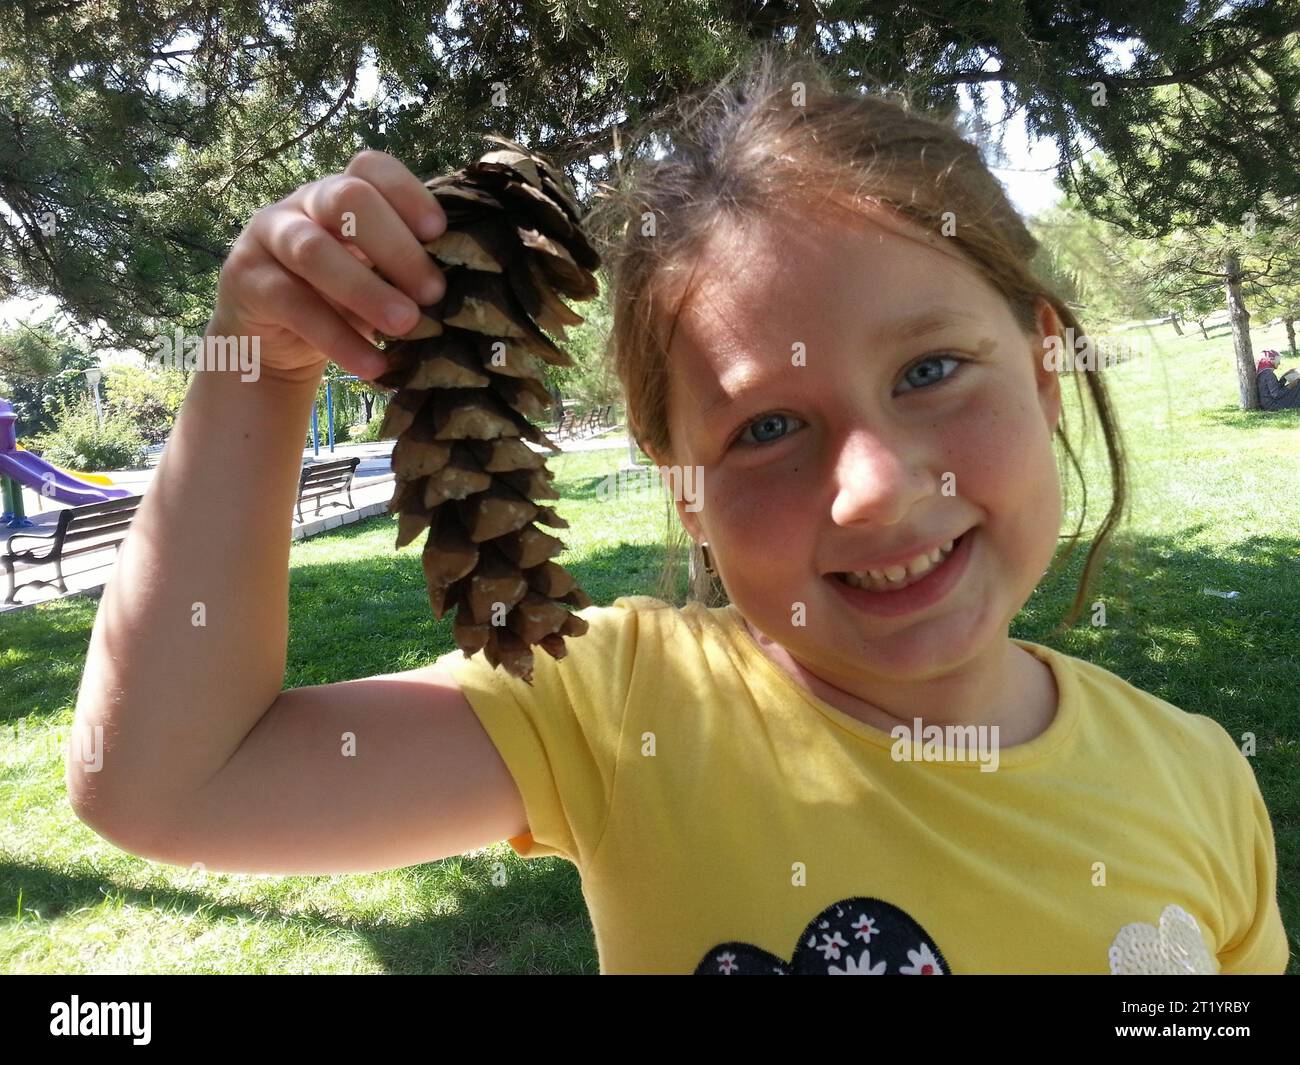 La ragazza carina e allegra che tiene in mano un cono di pino sorride. Foto Stock